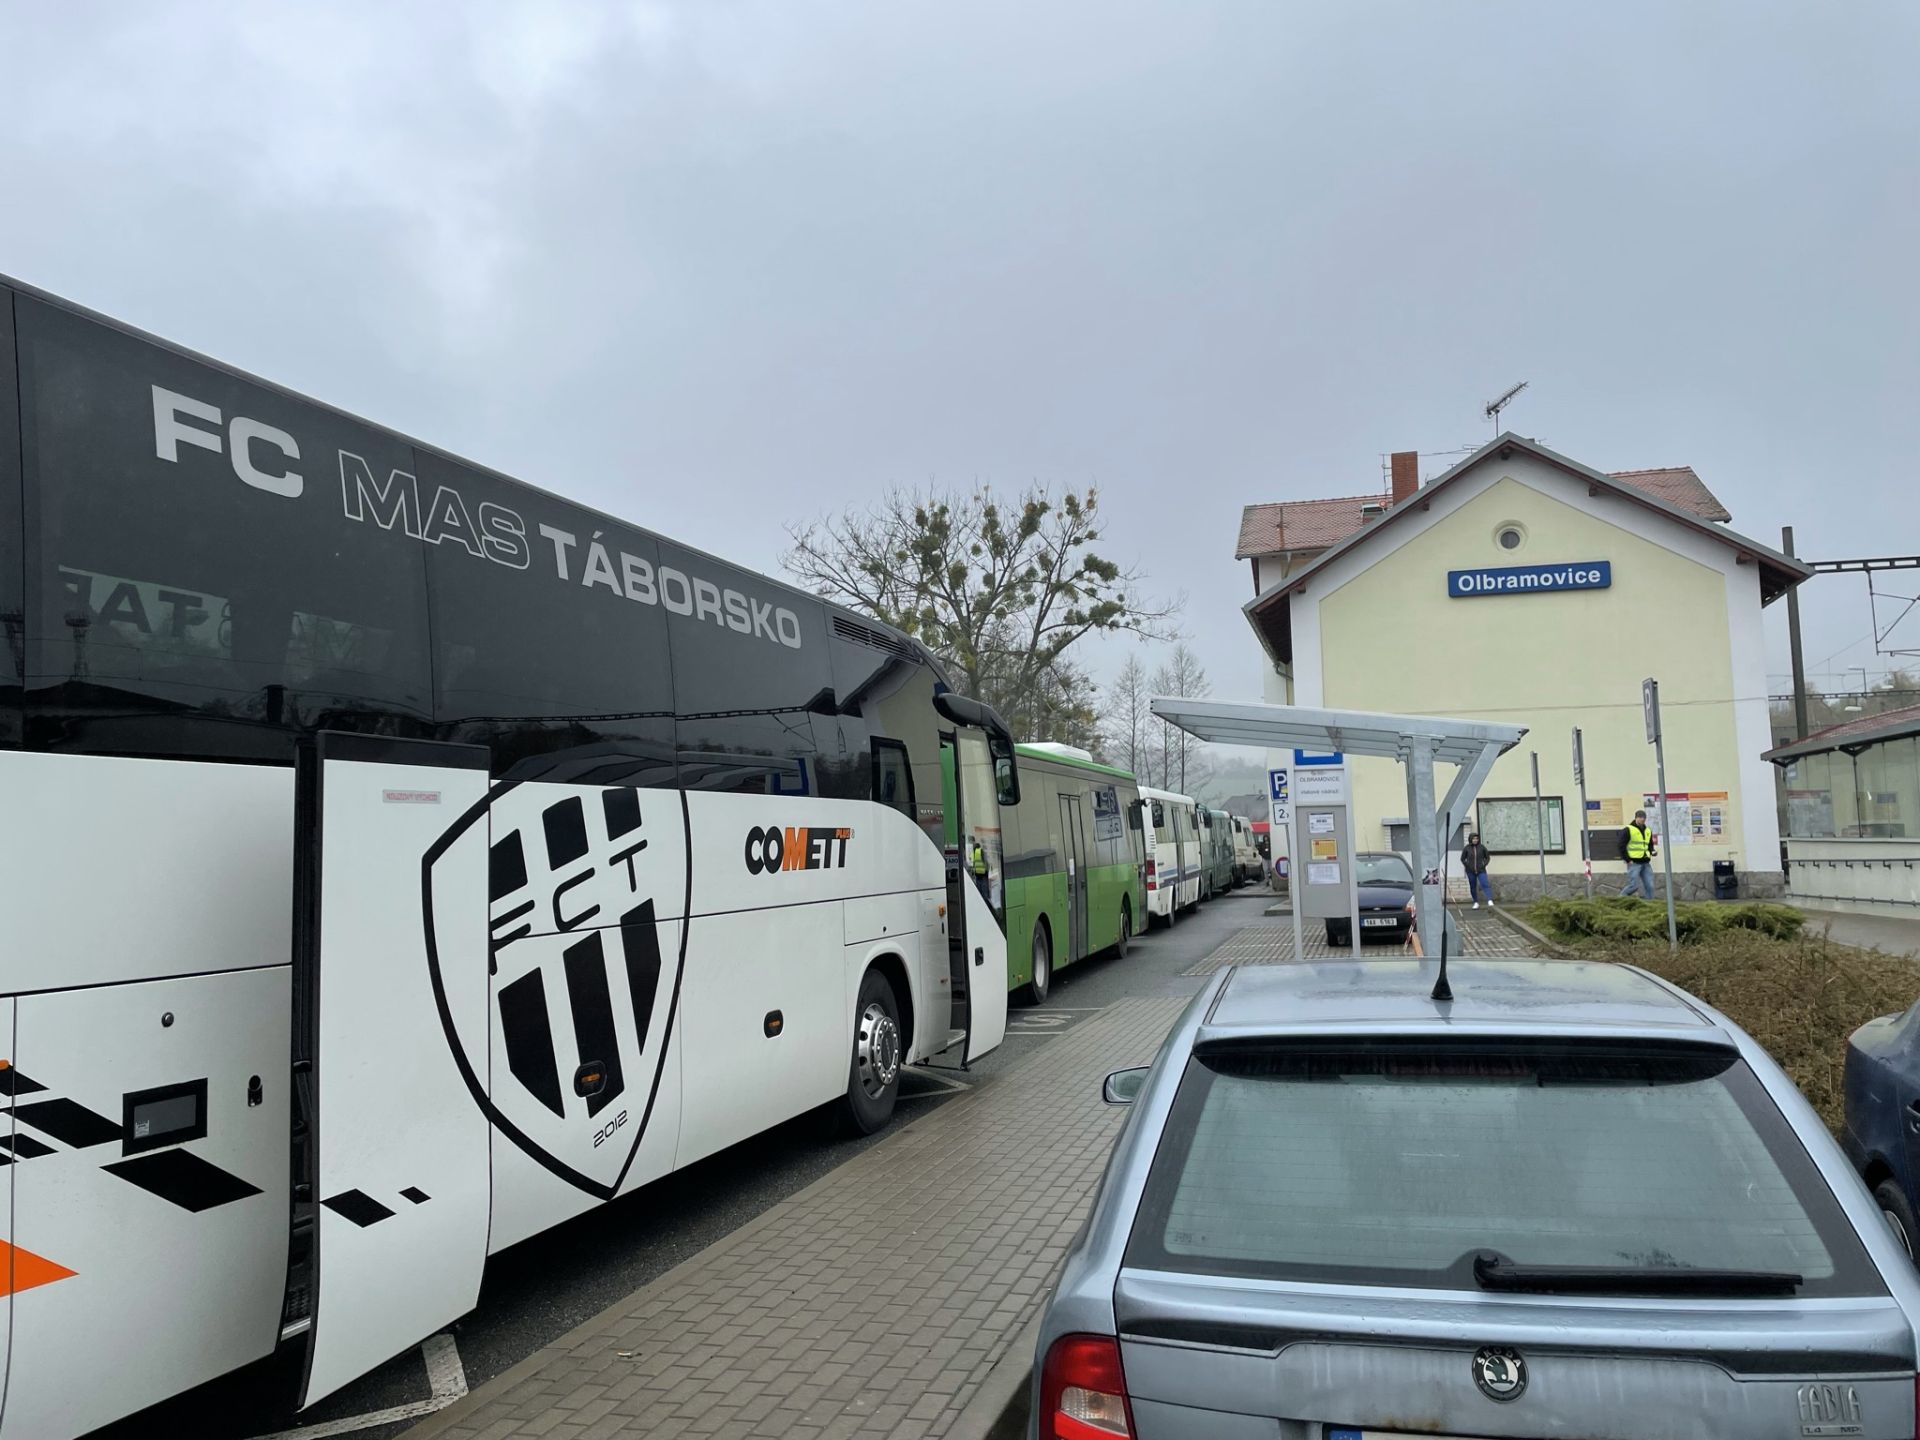 Náhradní autobusová doprava (NAD), Olbramovice. Autor: Zdopravy.cz/Jan Šindelář